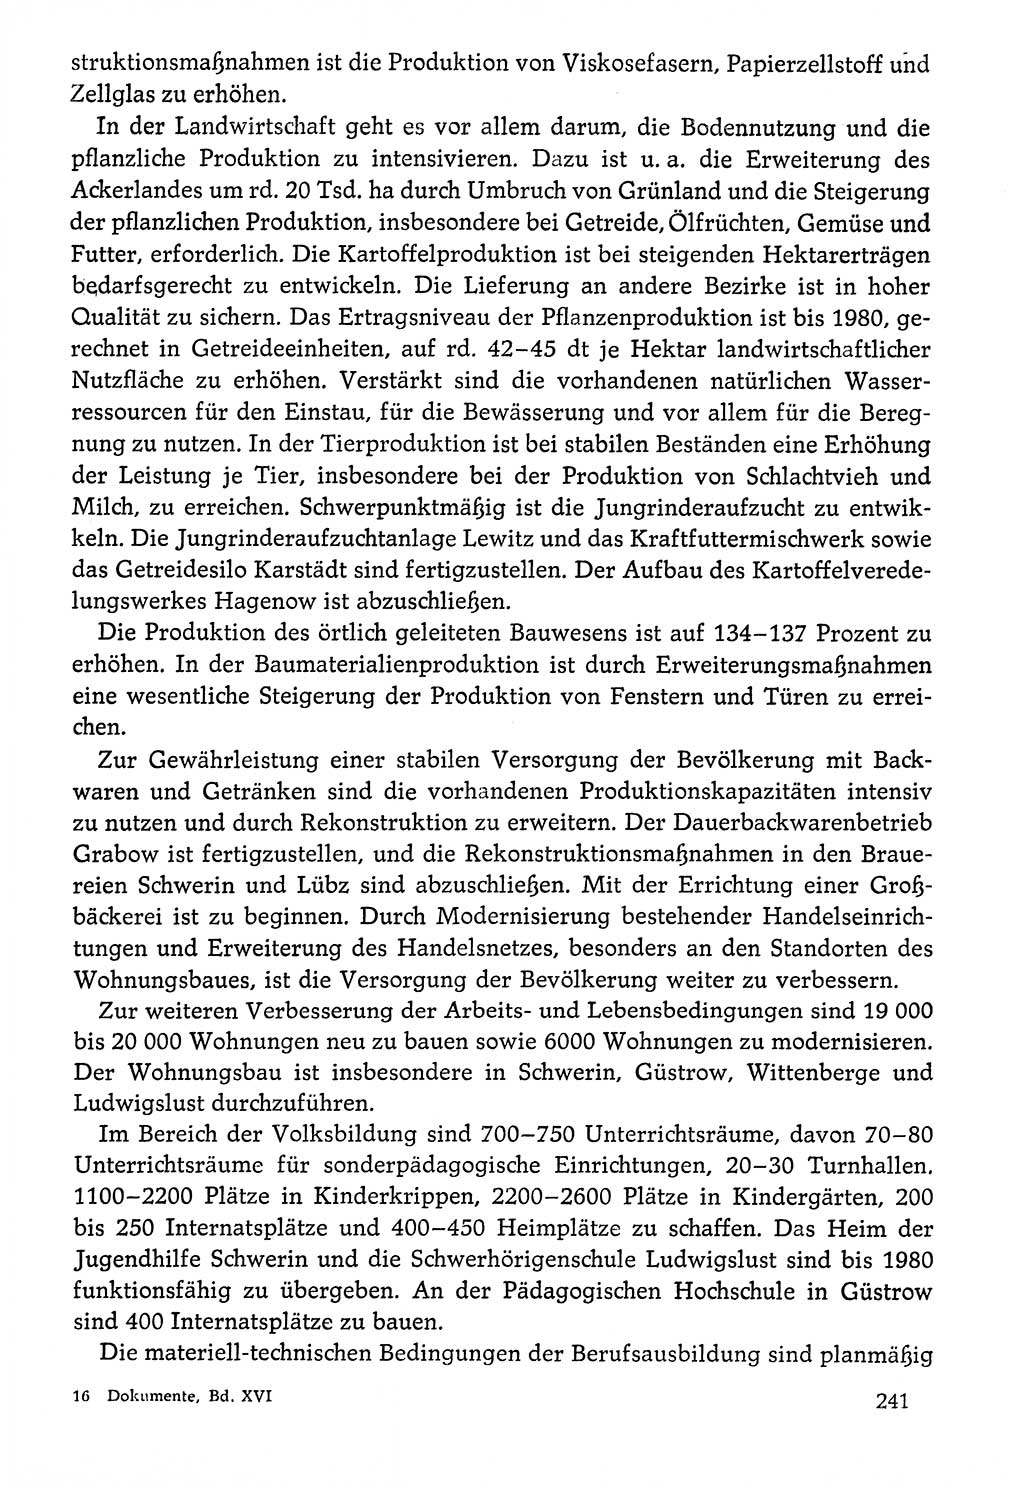 Dokumente der Sozialistischen Einheitspartei Deutschlands (SED) [Deutsche Demokratische Republik (DDR)] 1976-1977, Seite 241 (Dok. SED DDR 1976-1977, S. 241)